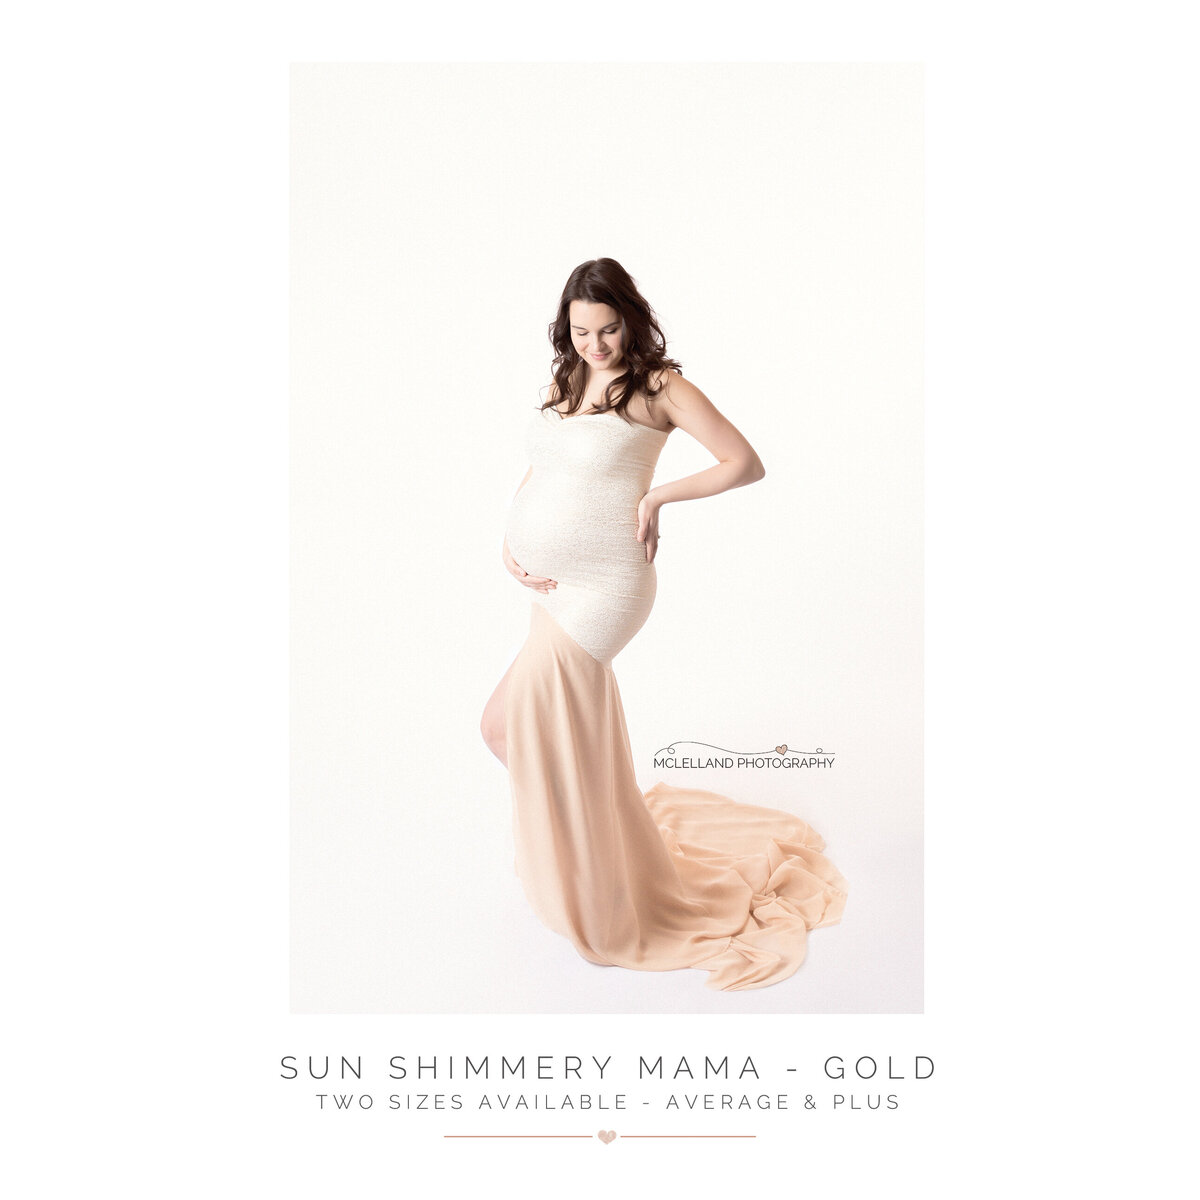 Sun Shimmery Mama - Gold